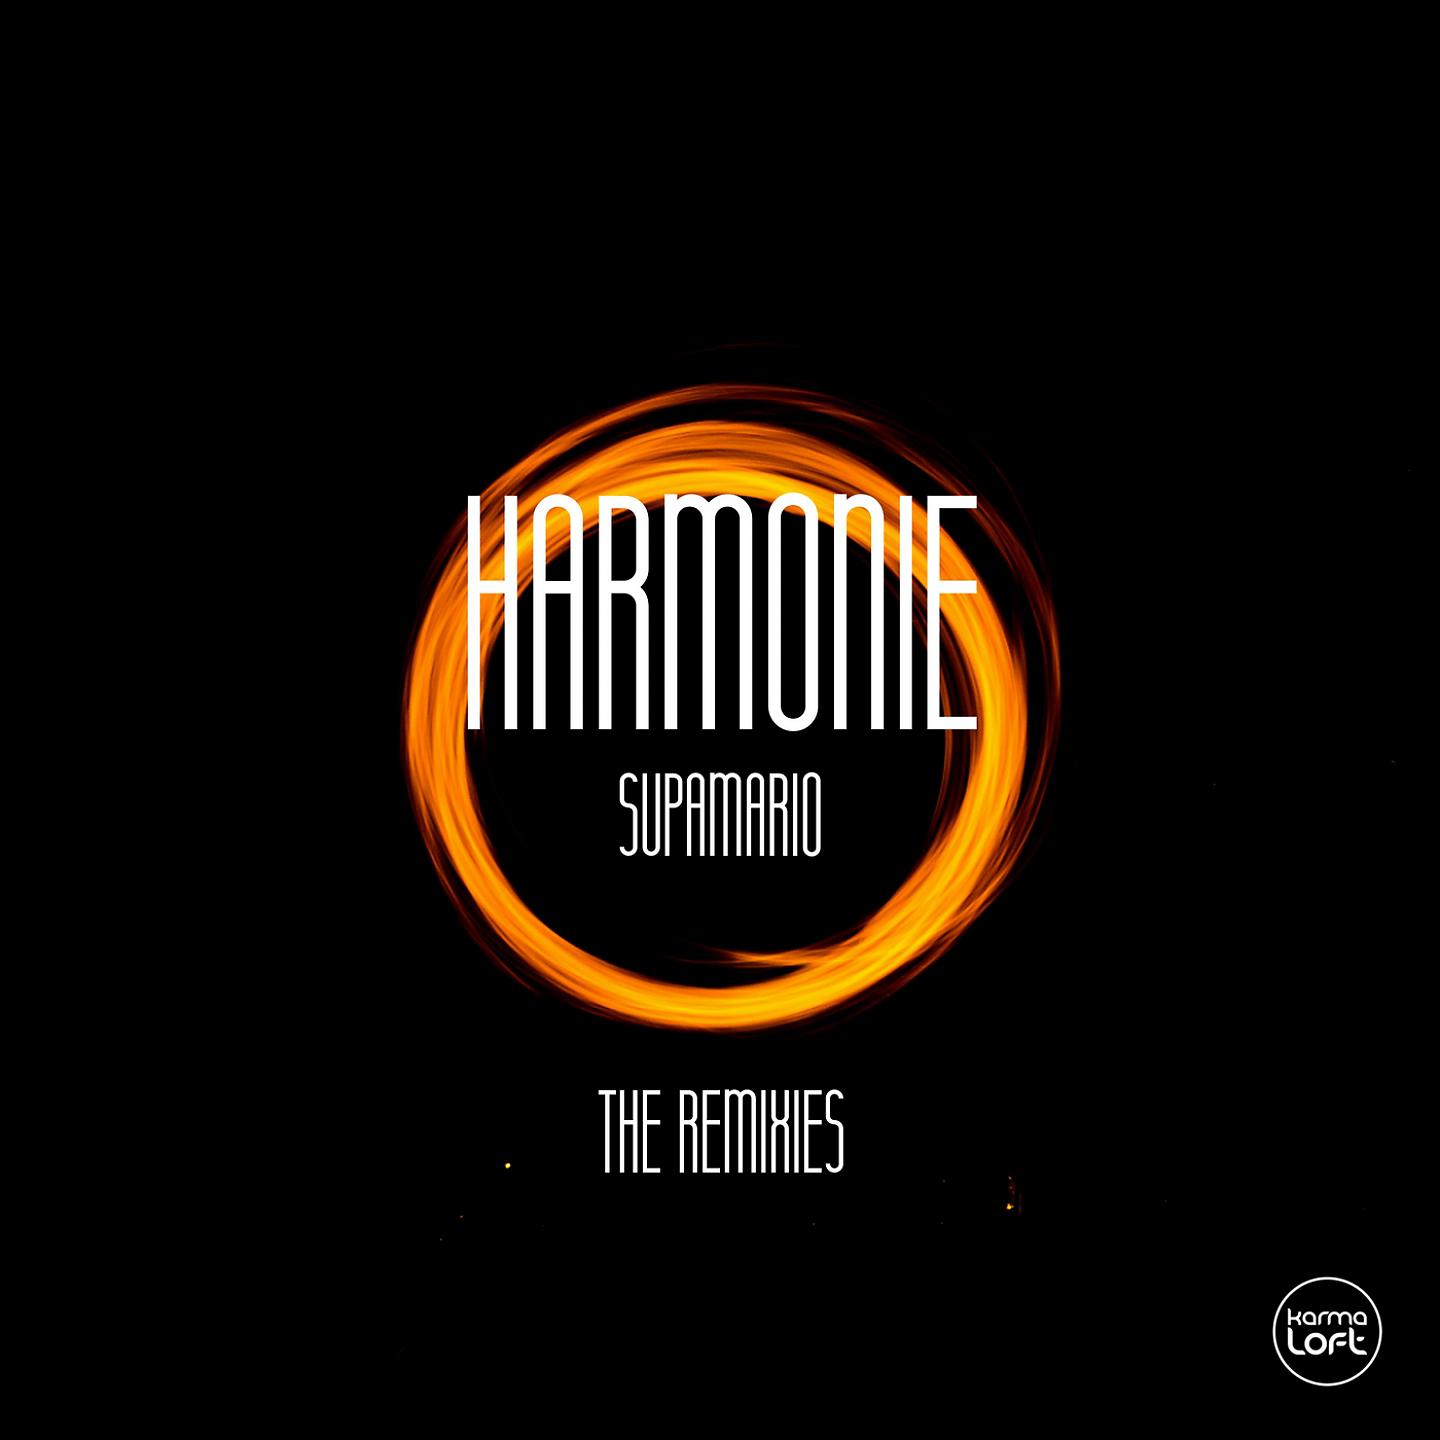 Постер альбома Harmonie